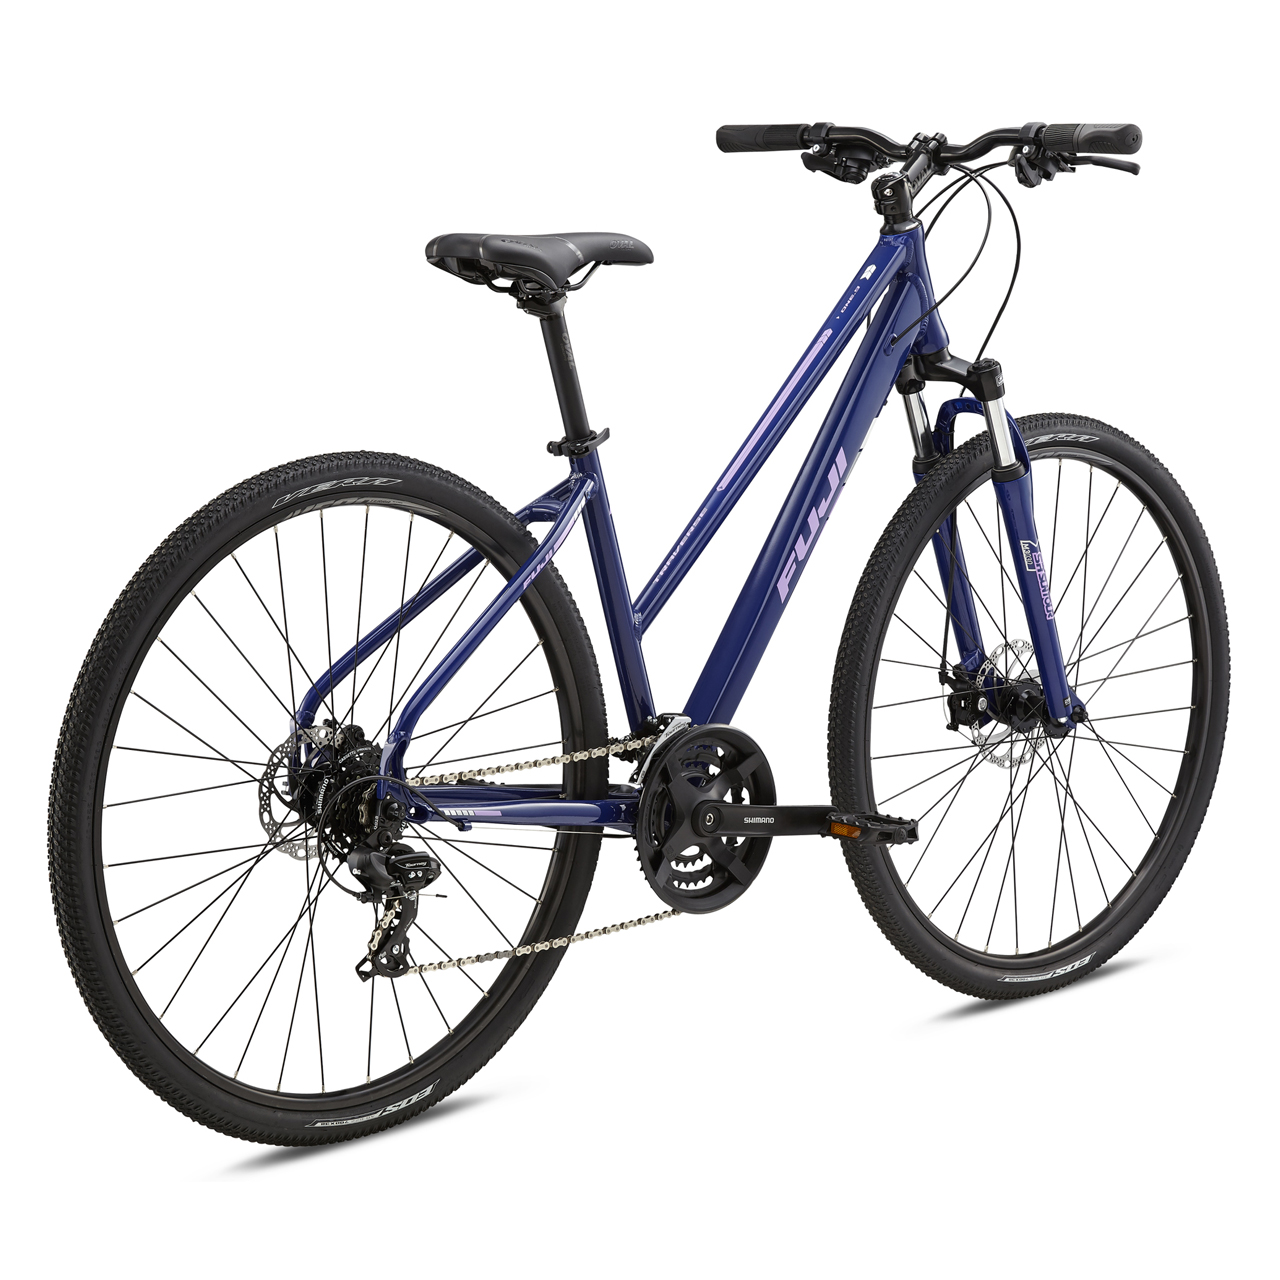 دوچرخه شهری فوجی Traverse 1.9 ST رنگ آبی تیره 2018